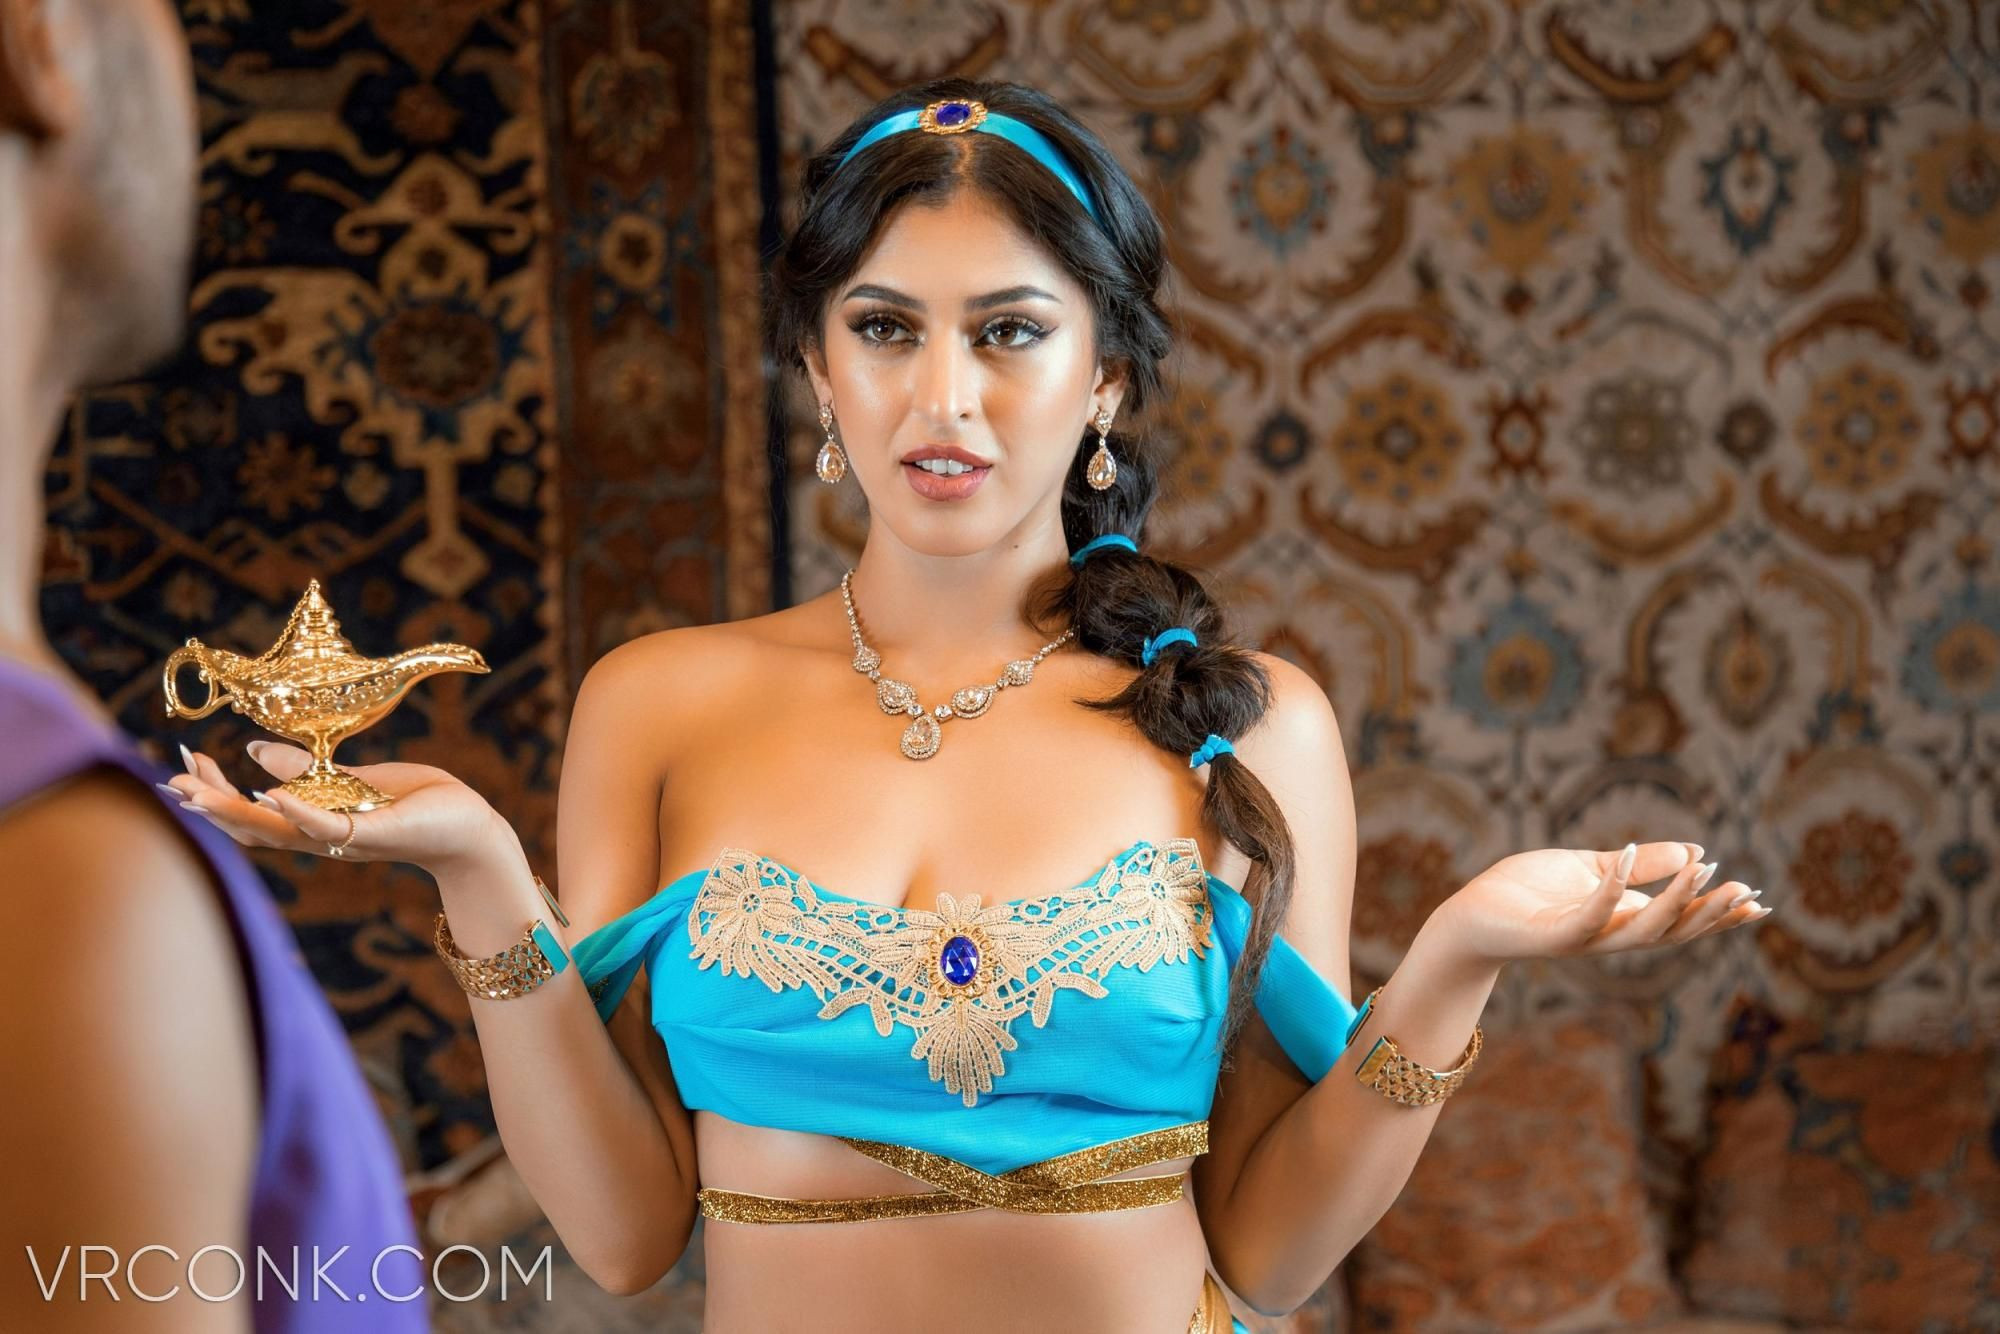 Jasmine & Aladdin (VR Porn Parody) Slideshow